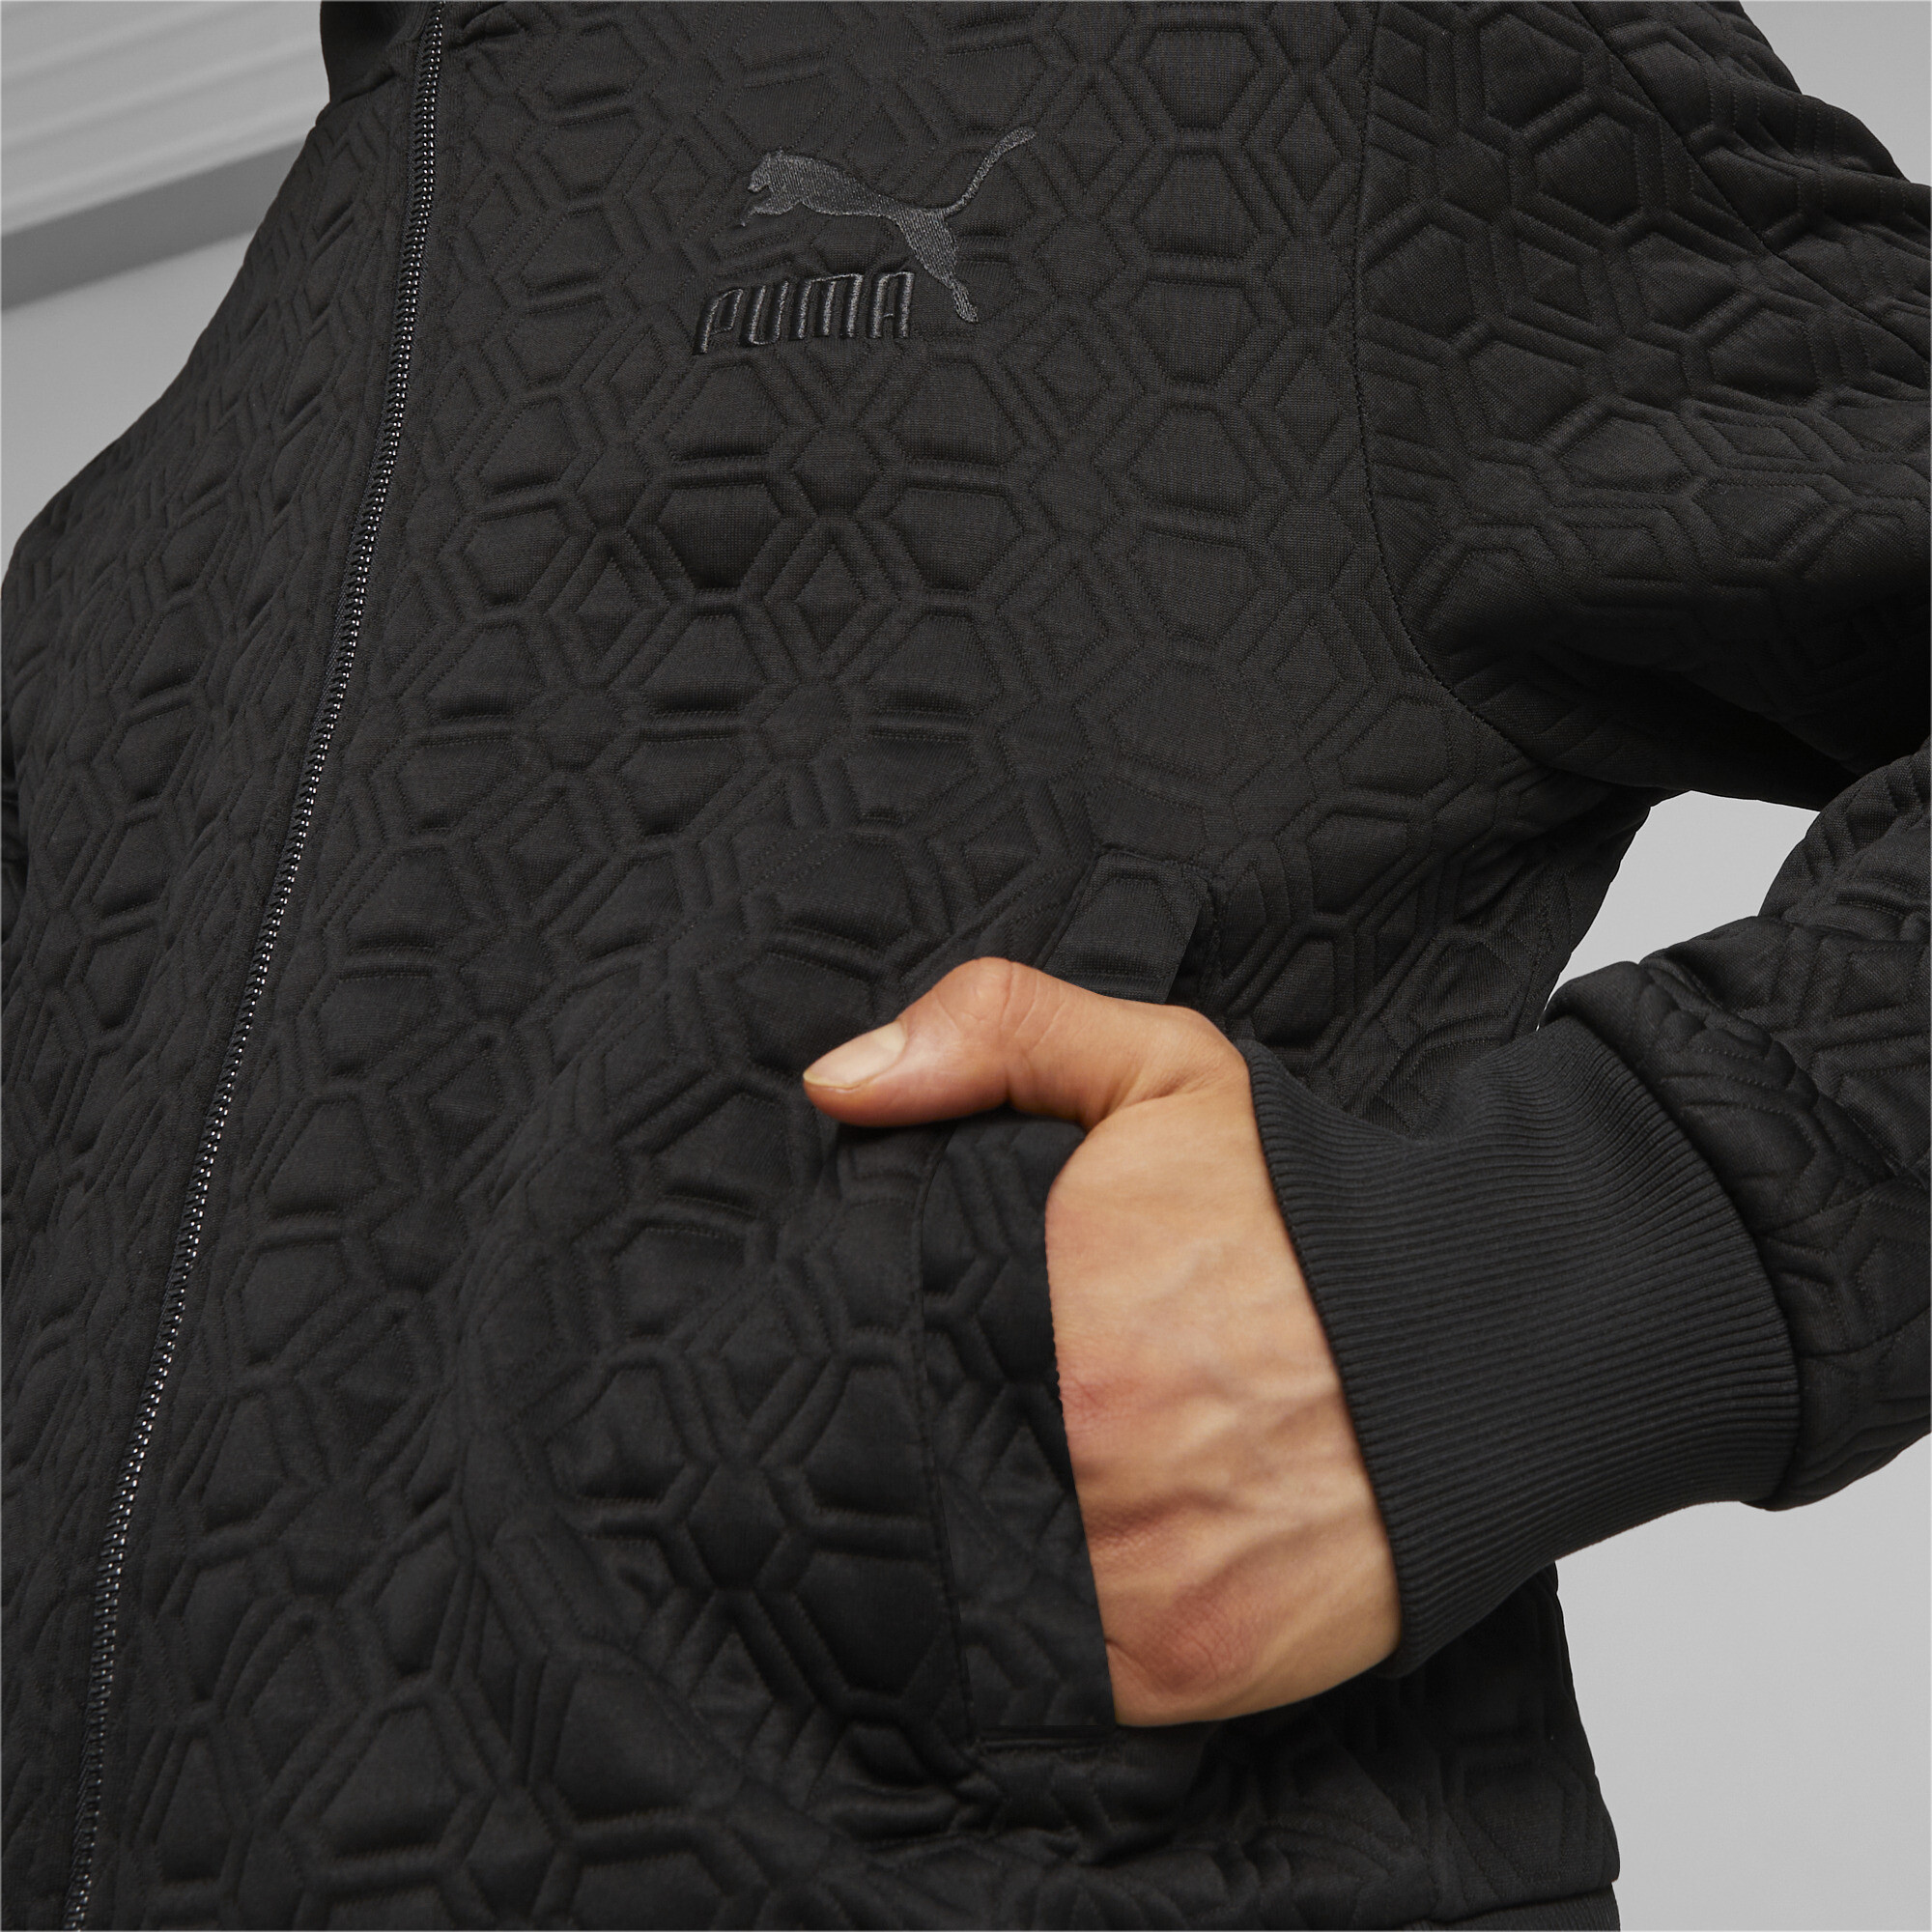 Men's PUMA LUXE SPORT T7 Track Jacket In Black, Size 2XL